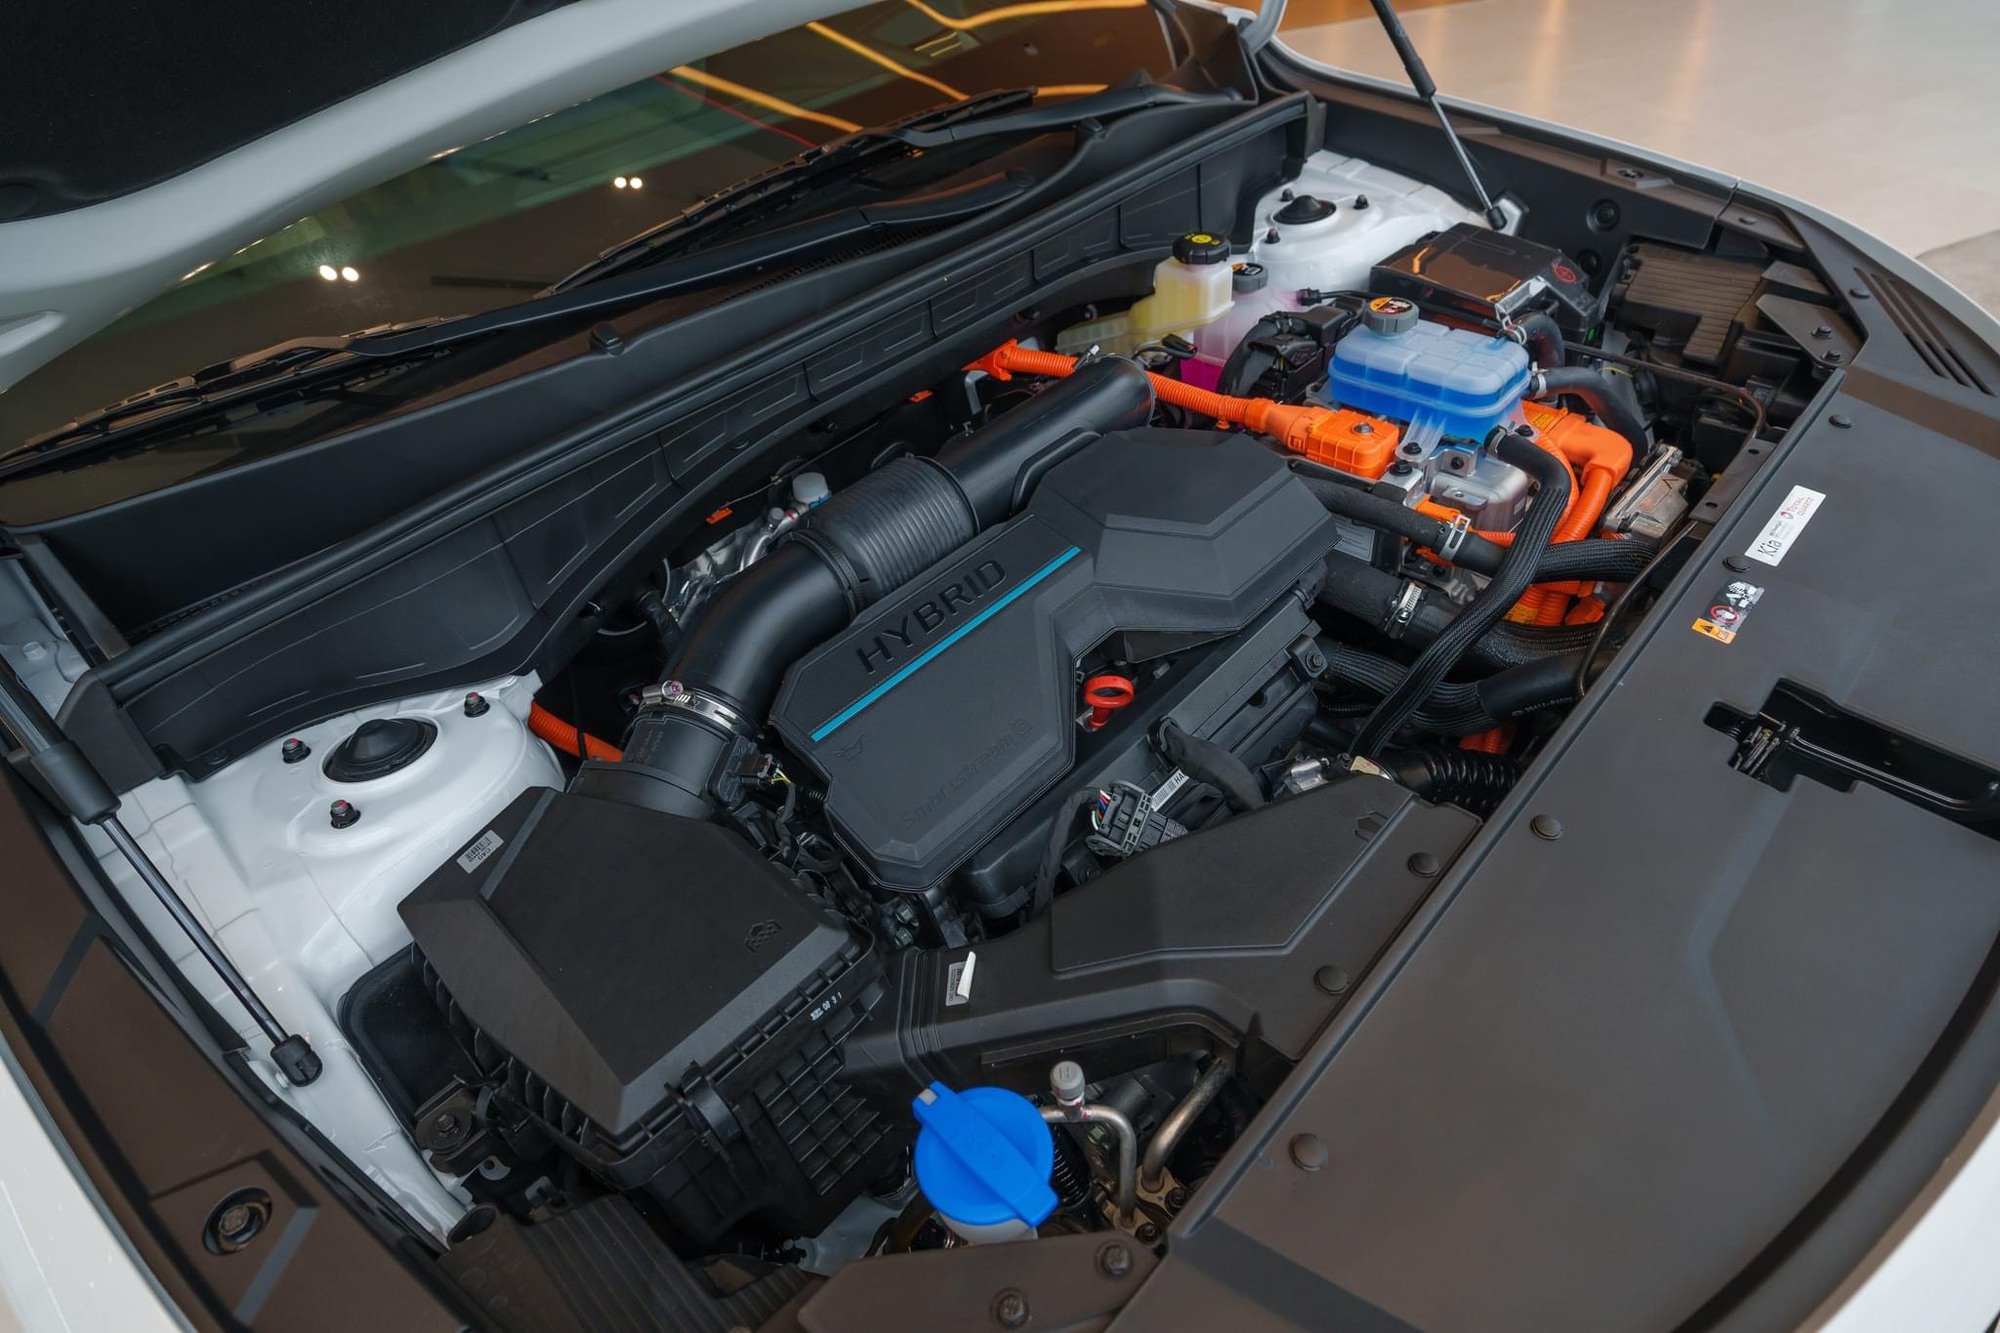 Kia Sorento hybrid ồ ạt về đại lý: Giá từ 1,4 tỷ đồng, bản cắm sạc đắt hơn nửa tỷ so với máy xăng - Ảnh 4.